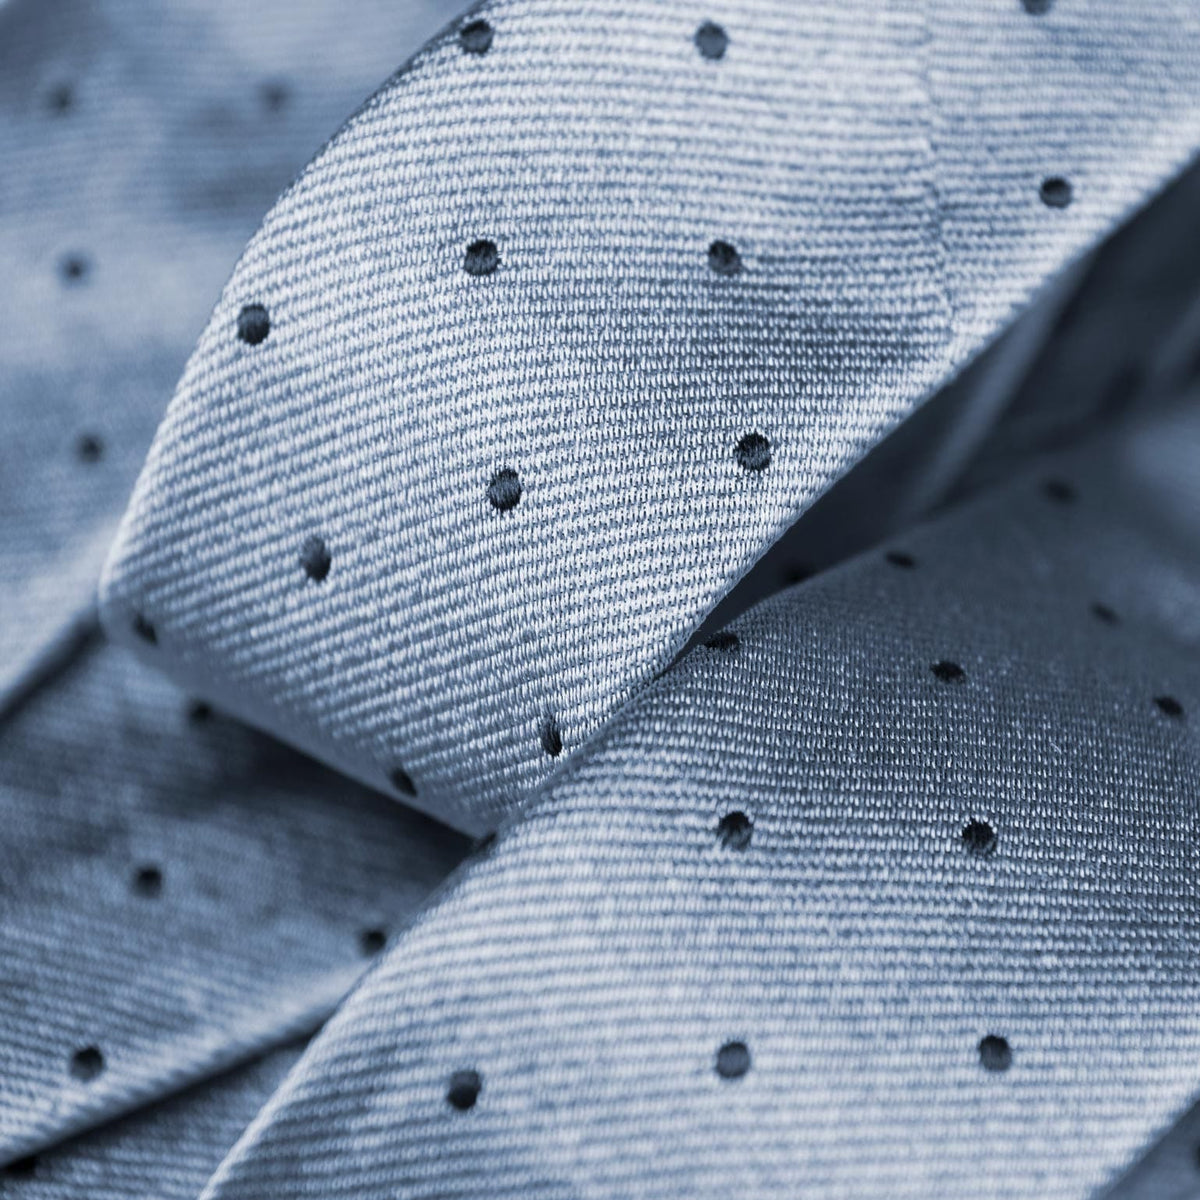 Extra Long Sky Blue Italian Silk Tie - Polka Dots